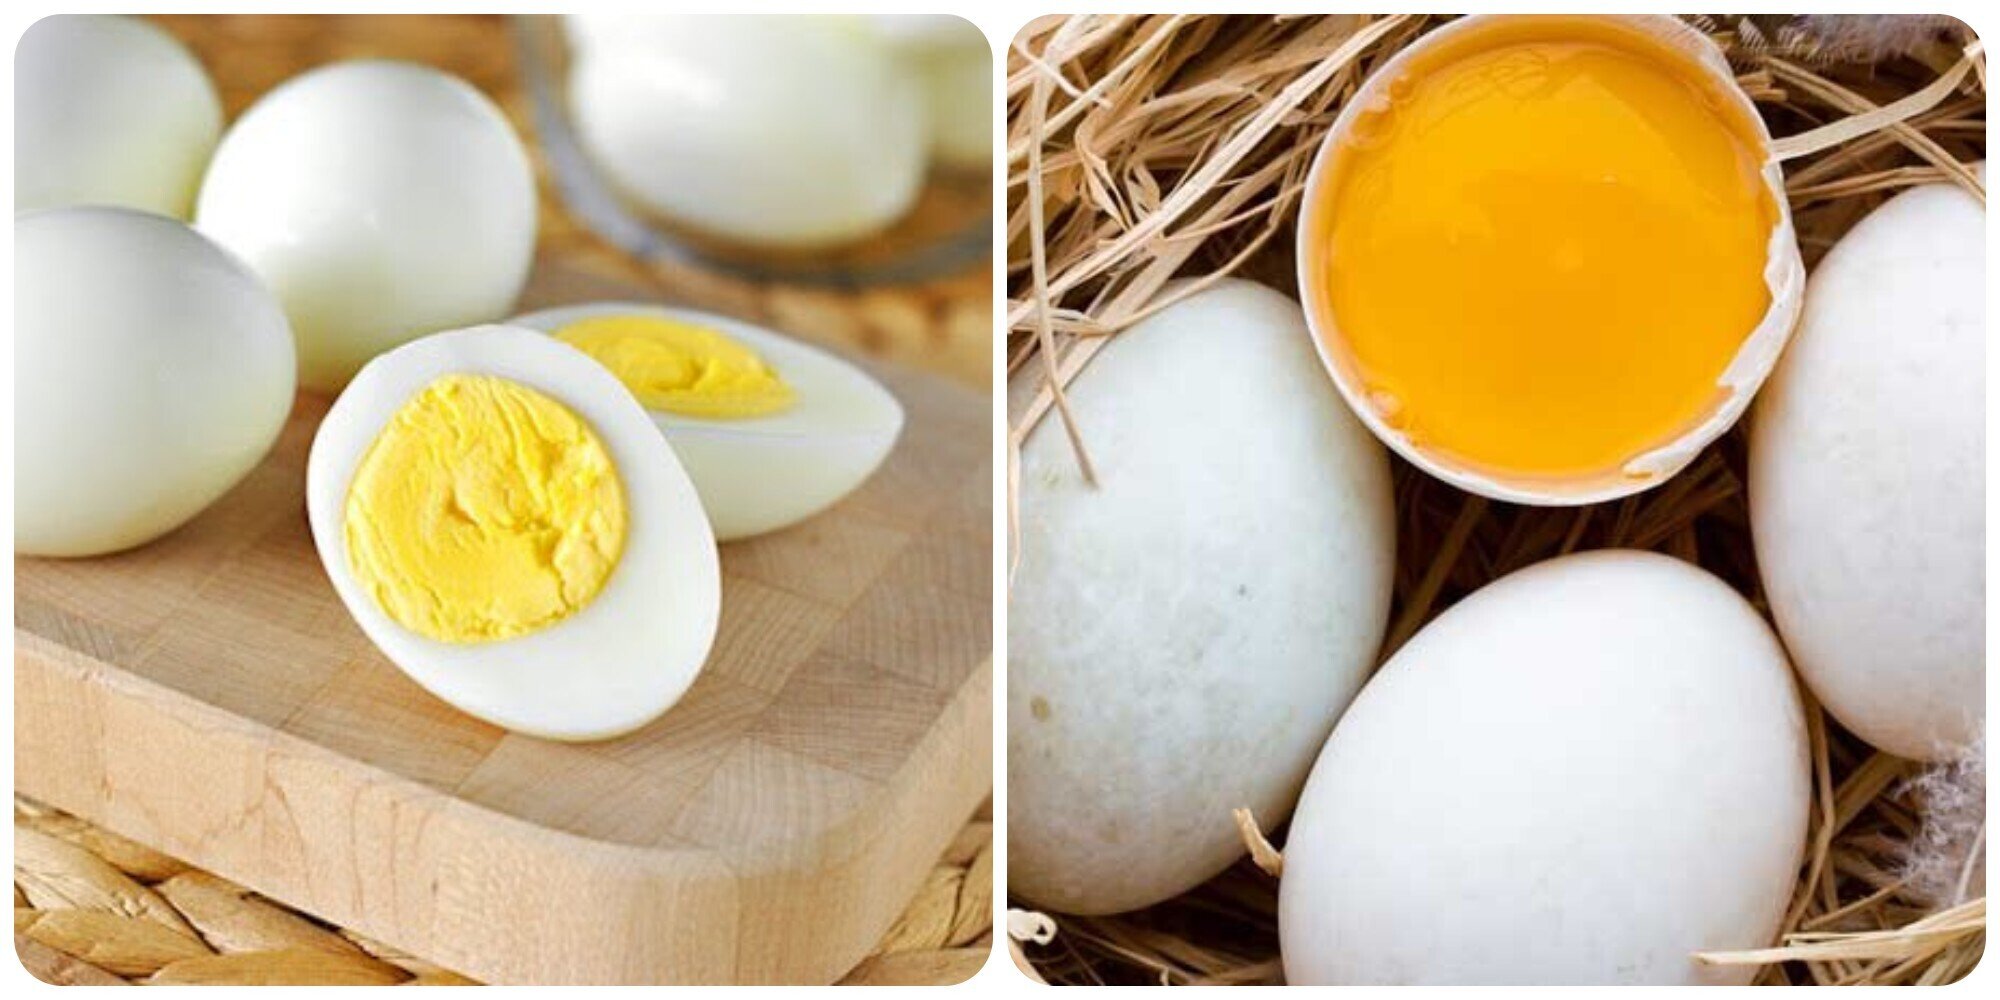 Phun môi kiêng trứng bao lâu Có cần kiêng trứng vịt lộn không